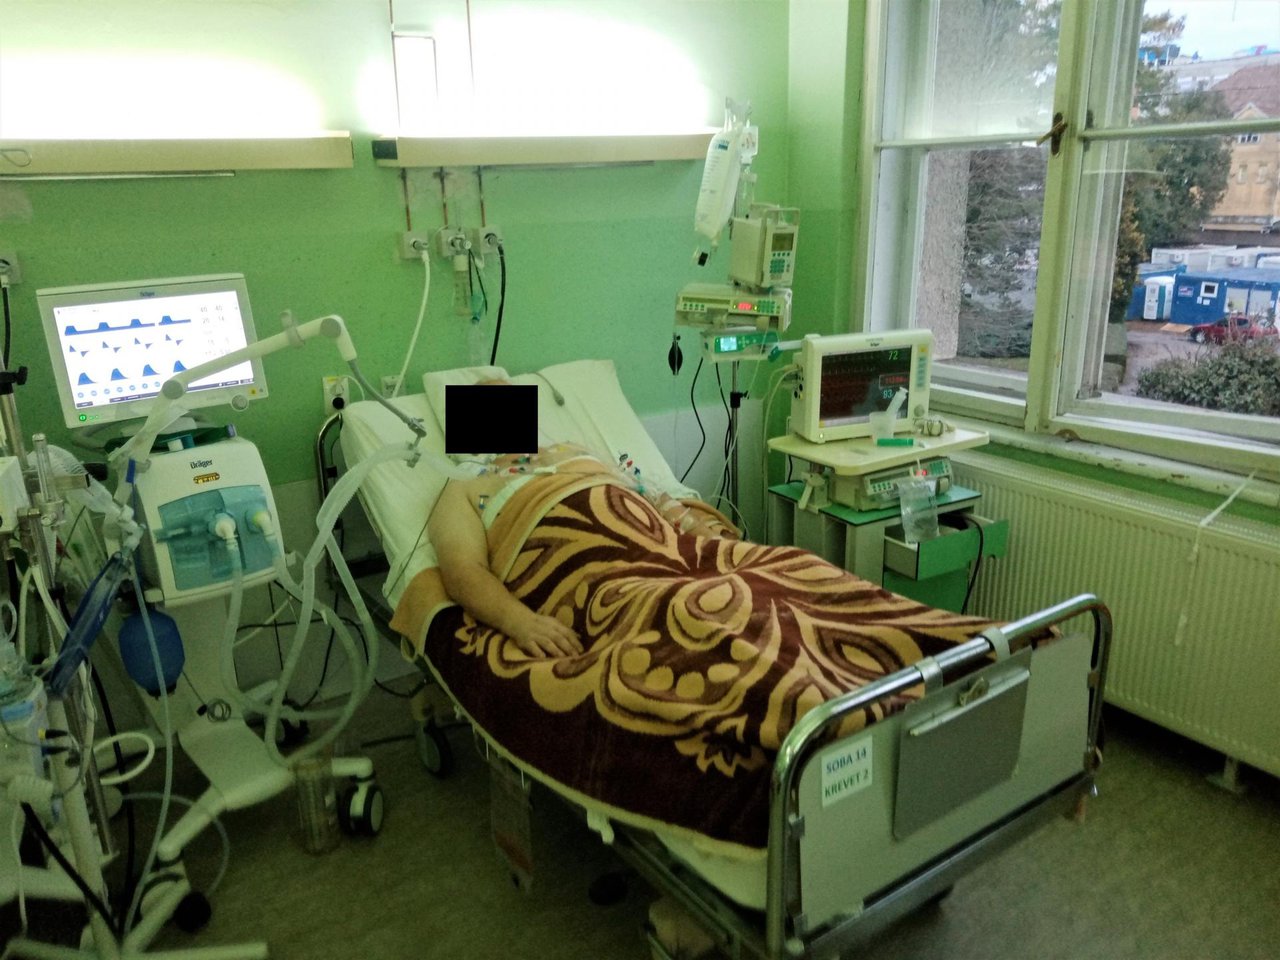 Fotografija: U posljednja 24 sata jedna osoba je preminula  s koronavirusom/Foto: Deni Marčinković
